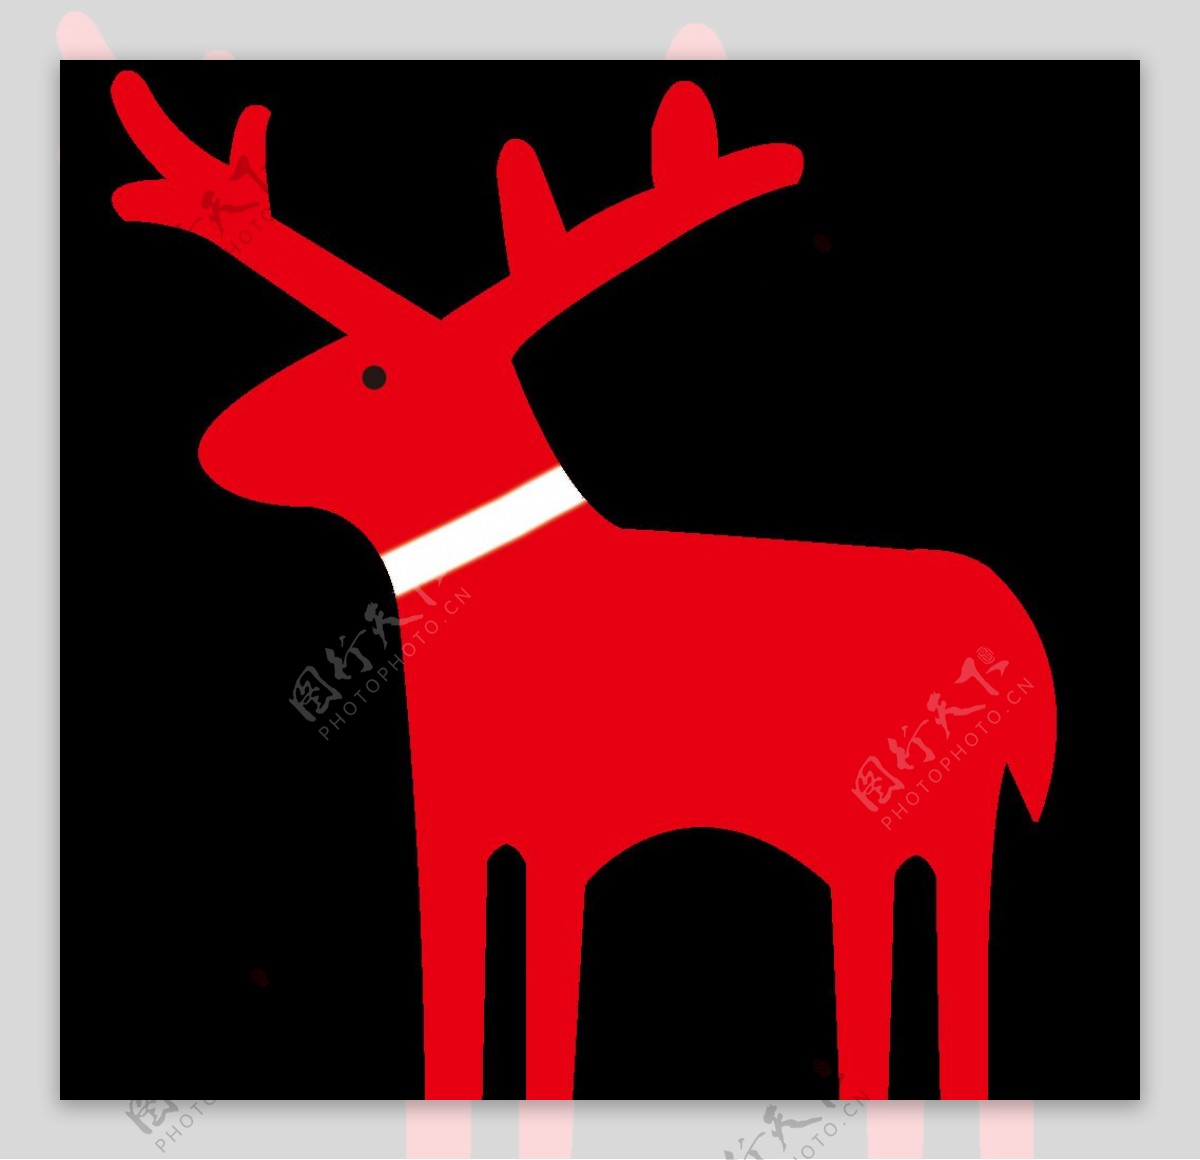 圣诞节卡通小鹿模型